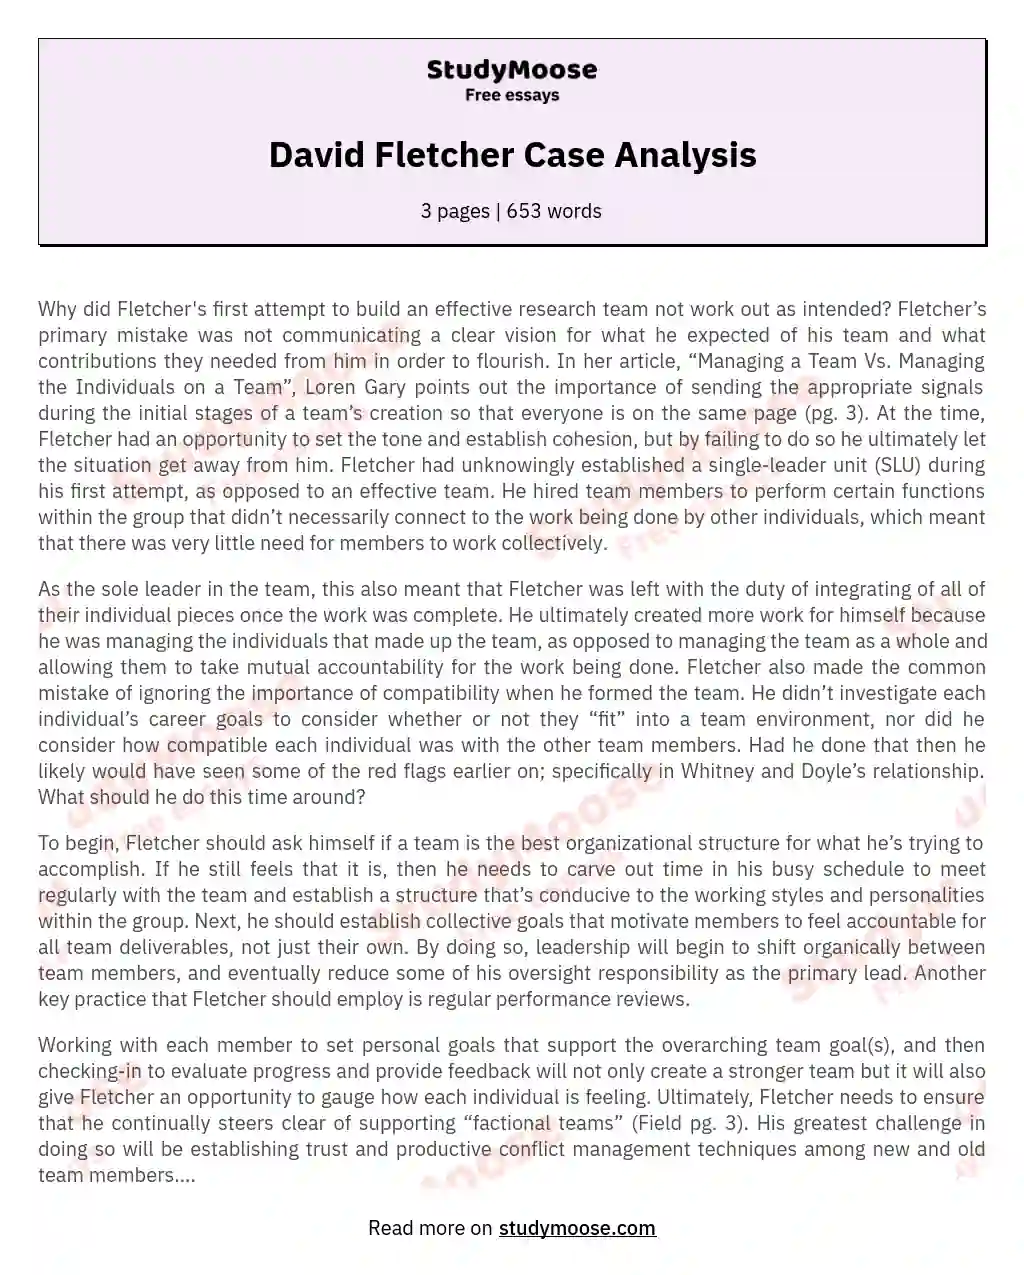 David Fletcher Case Analysis essay